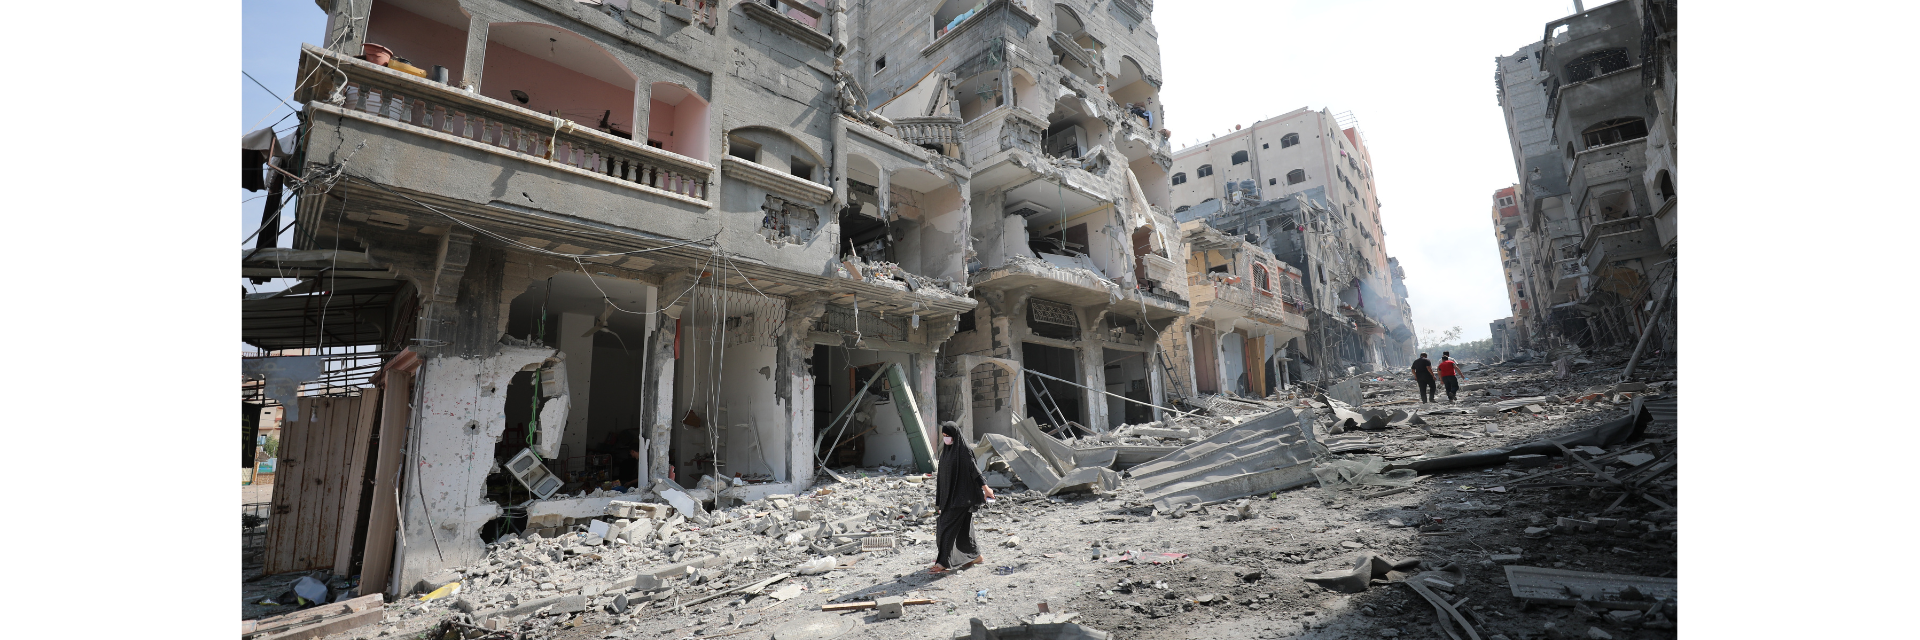 Gaza ruins and humanitarian crisis